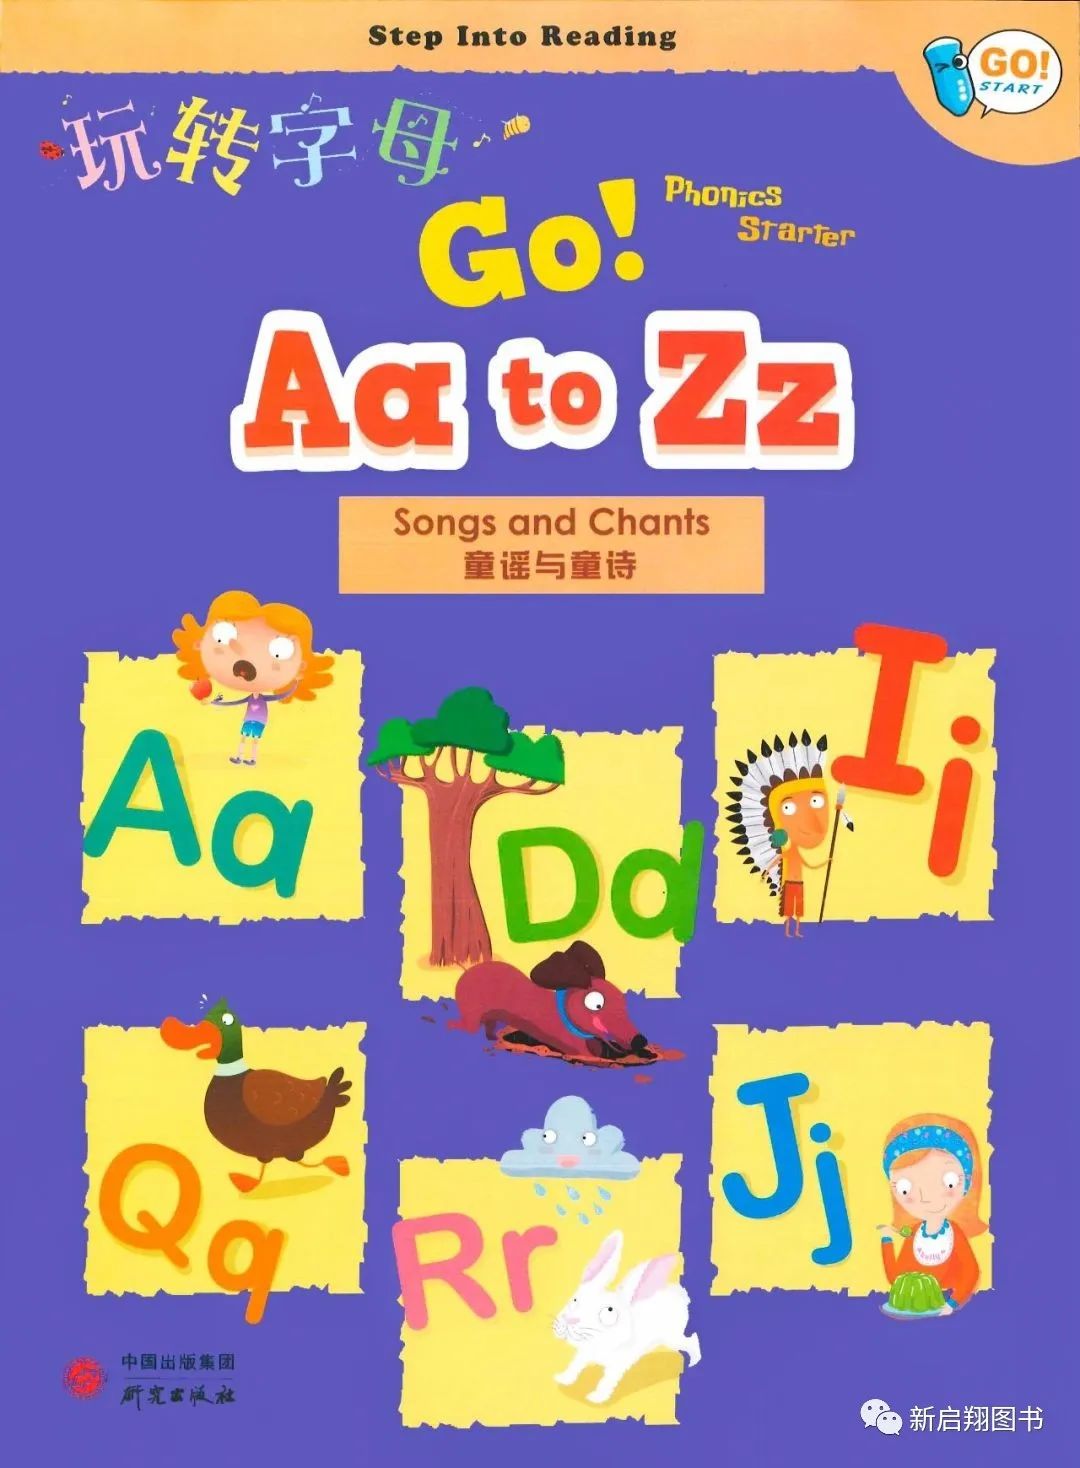 英语启蒙图书《玩转字母》（Go! Aa to Zz）是一套专为初学英语的儿童所设计的英语课程，适合3－6岁的学生使用。